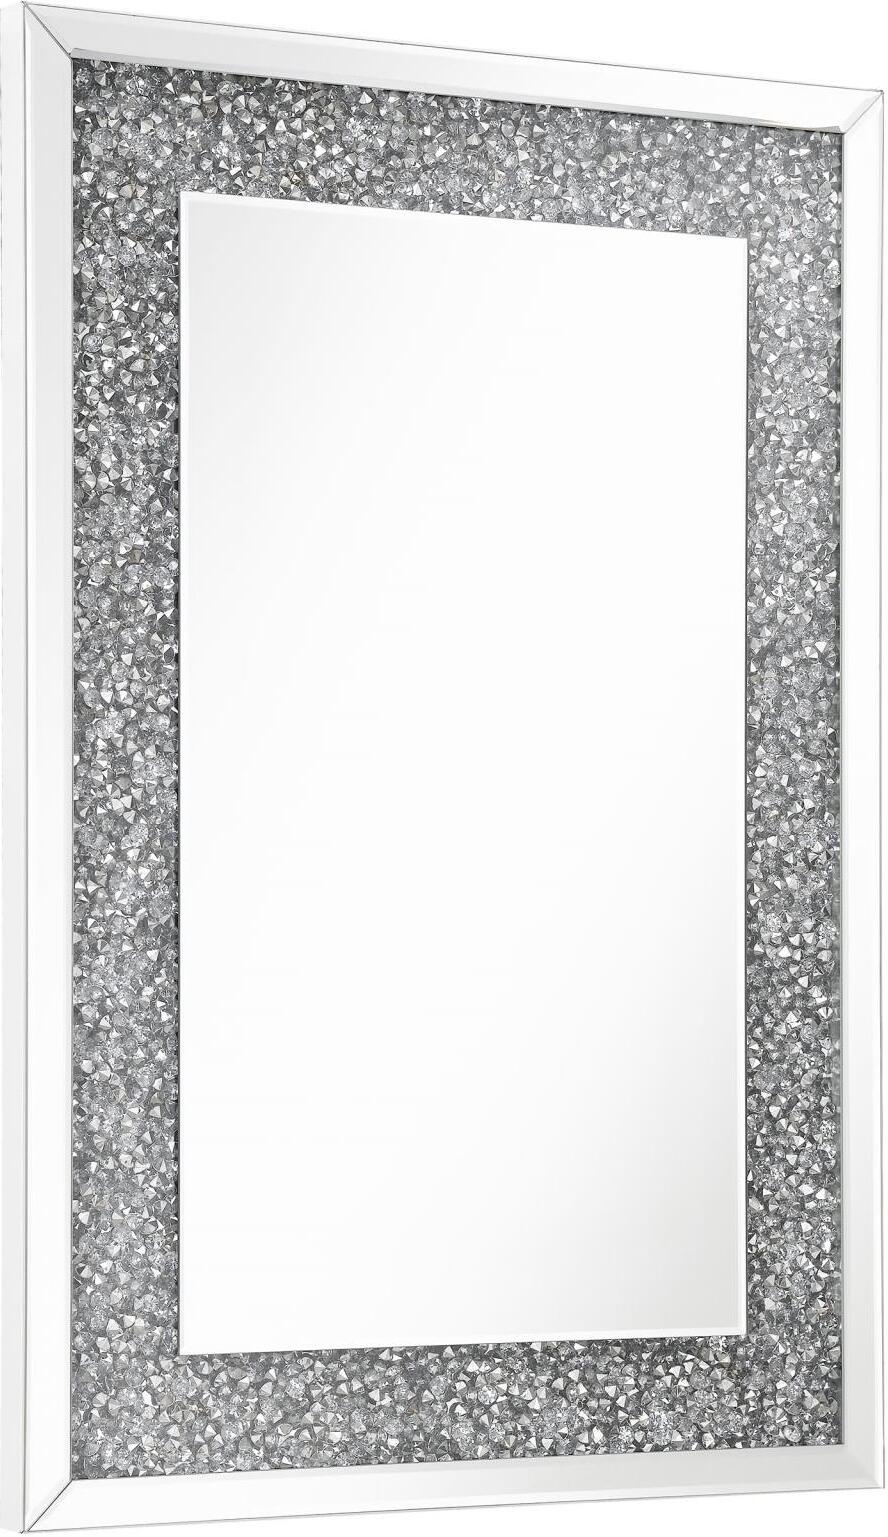 Rhinestone encrusted wall mirror